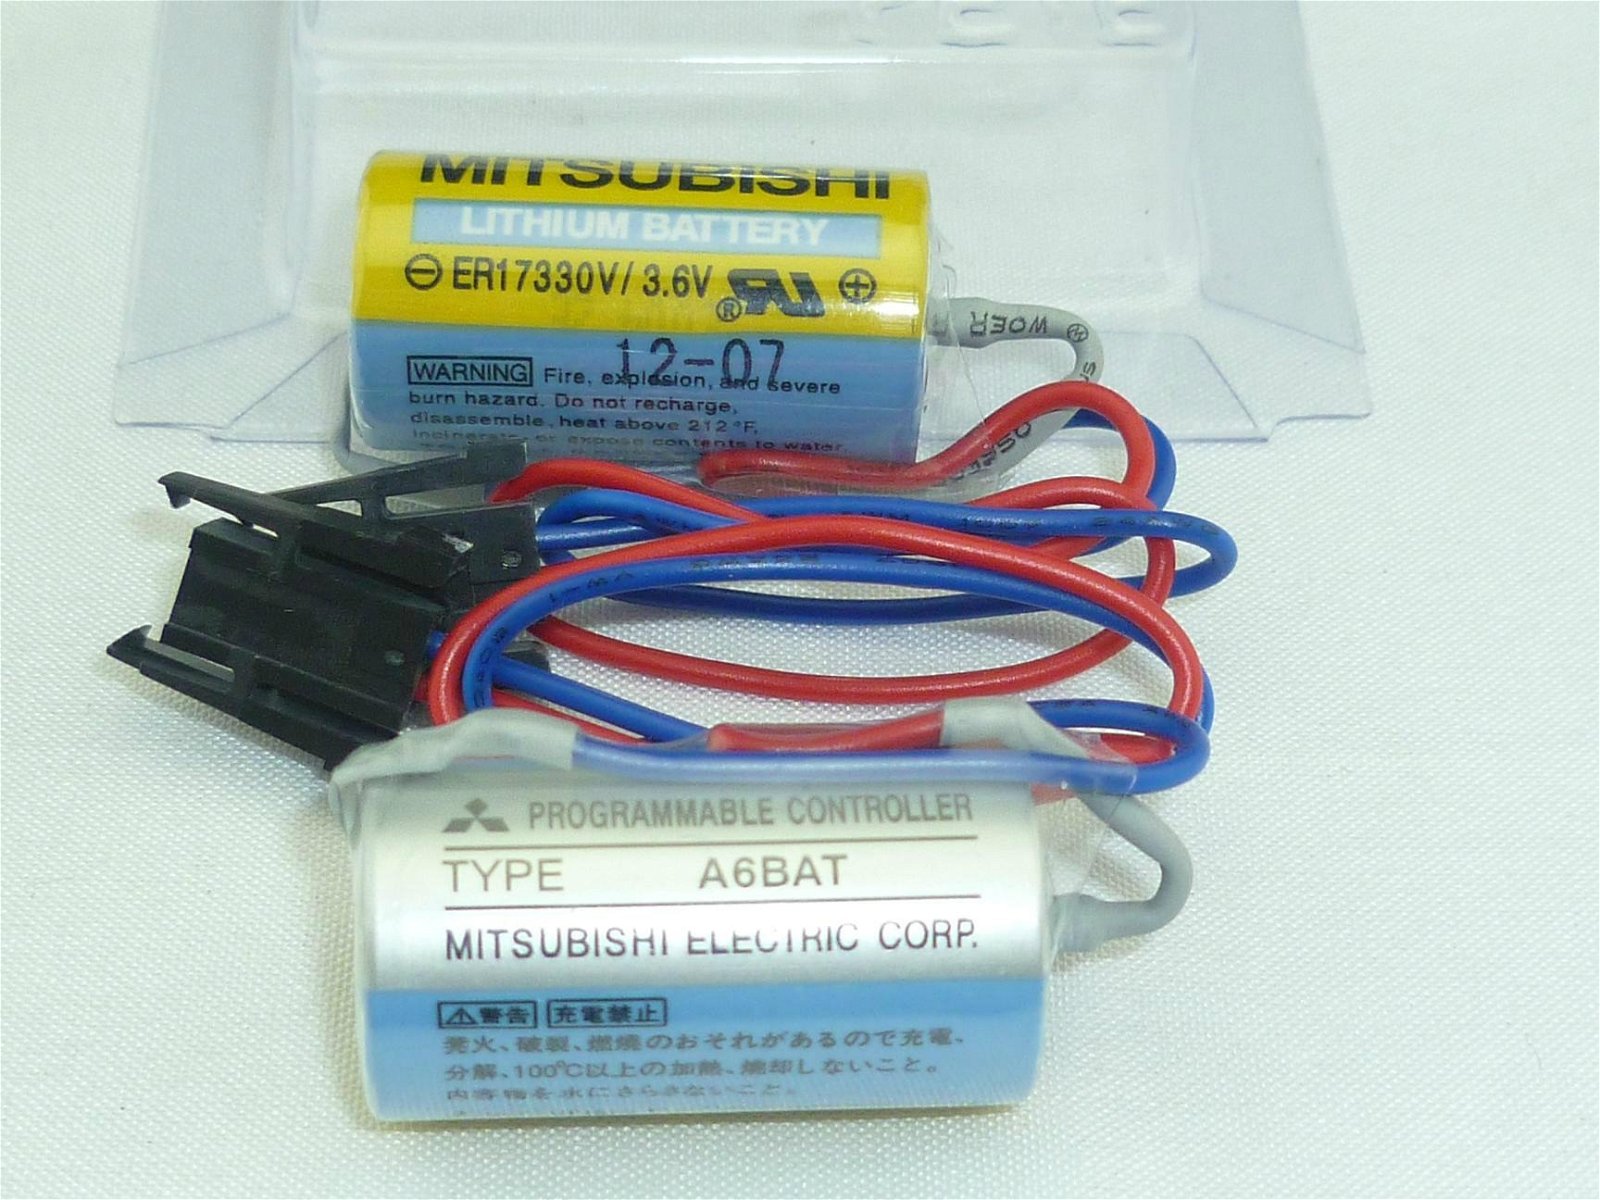 MITSUBISHI ER17330V A6BAT PLC Lithium 3.6V battery 2